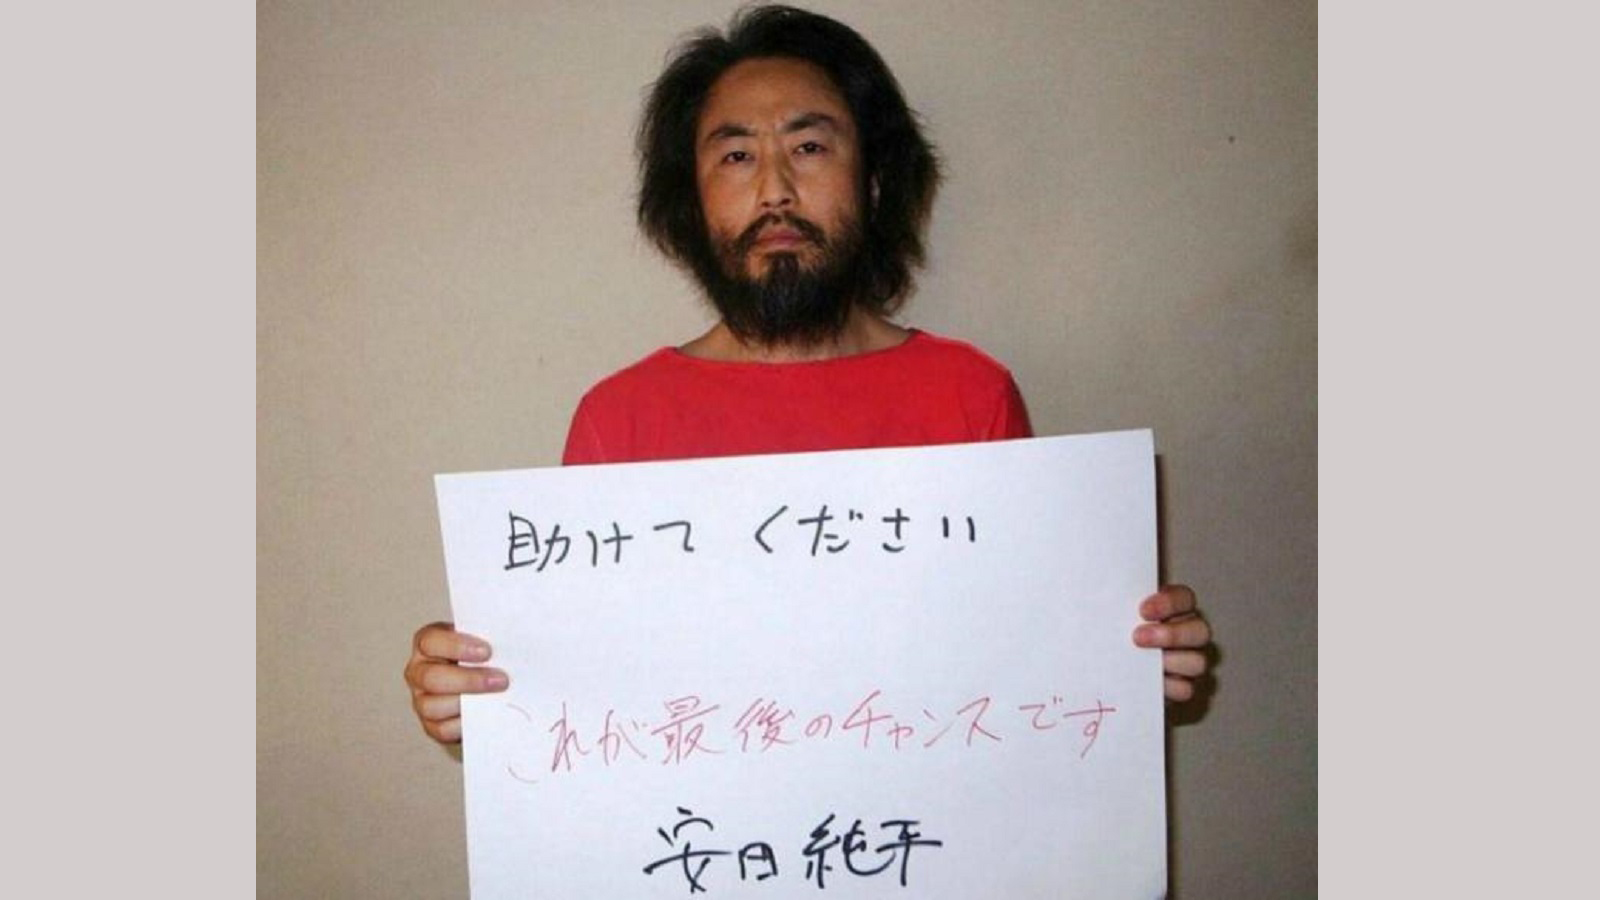 خاطفو الصحافي الياباني في سوريا يهددون بتسليمه لـ"داعش"